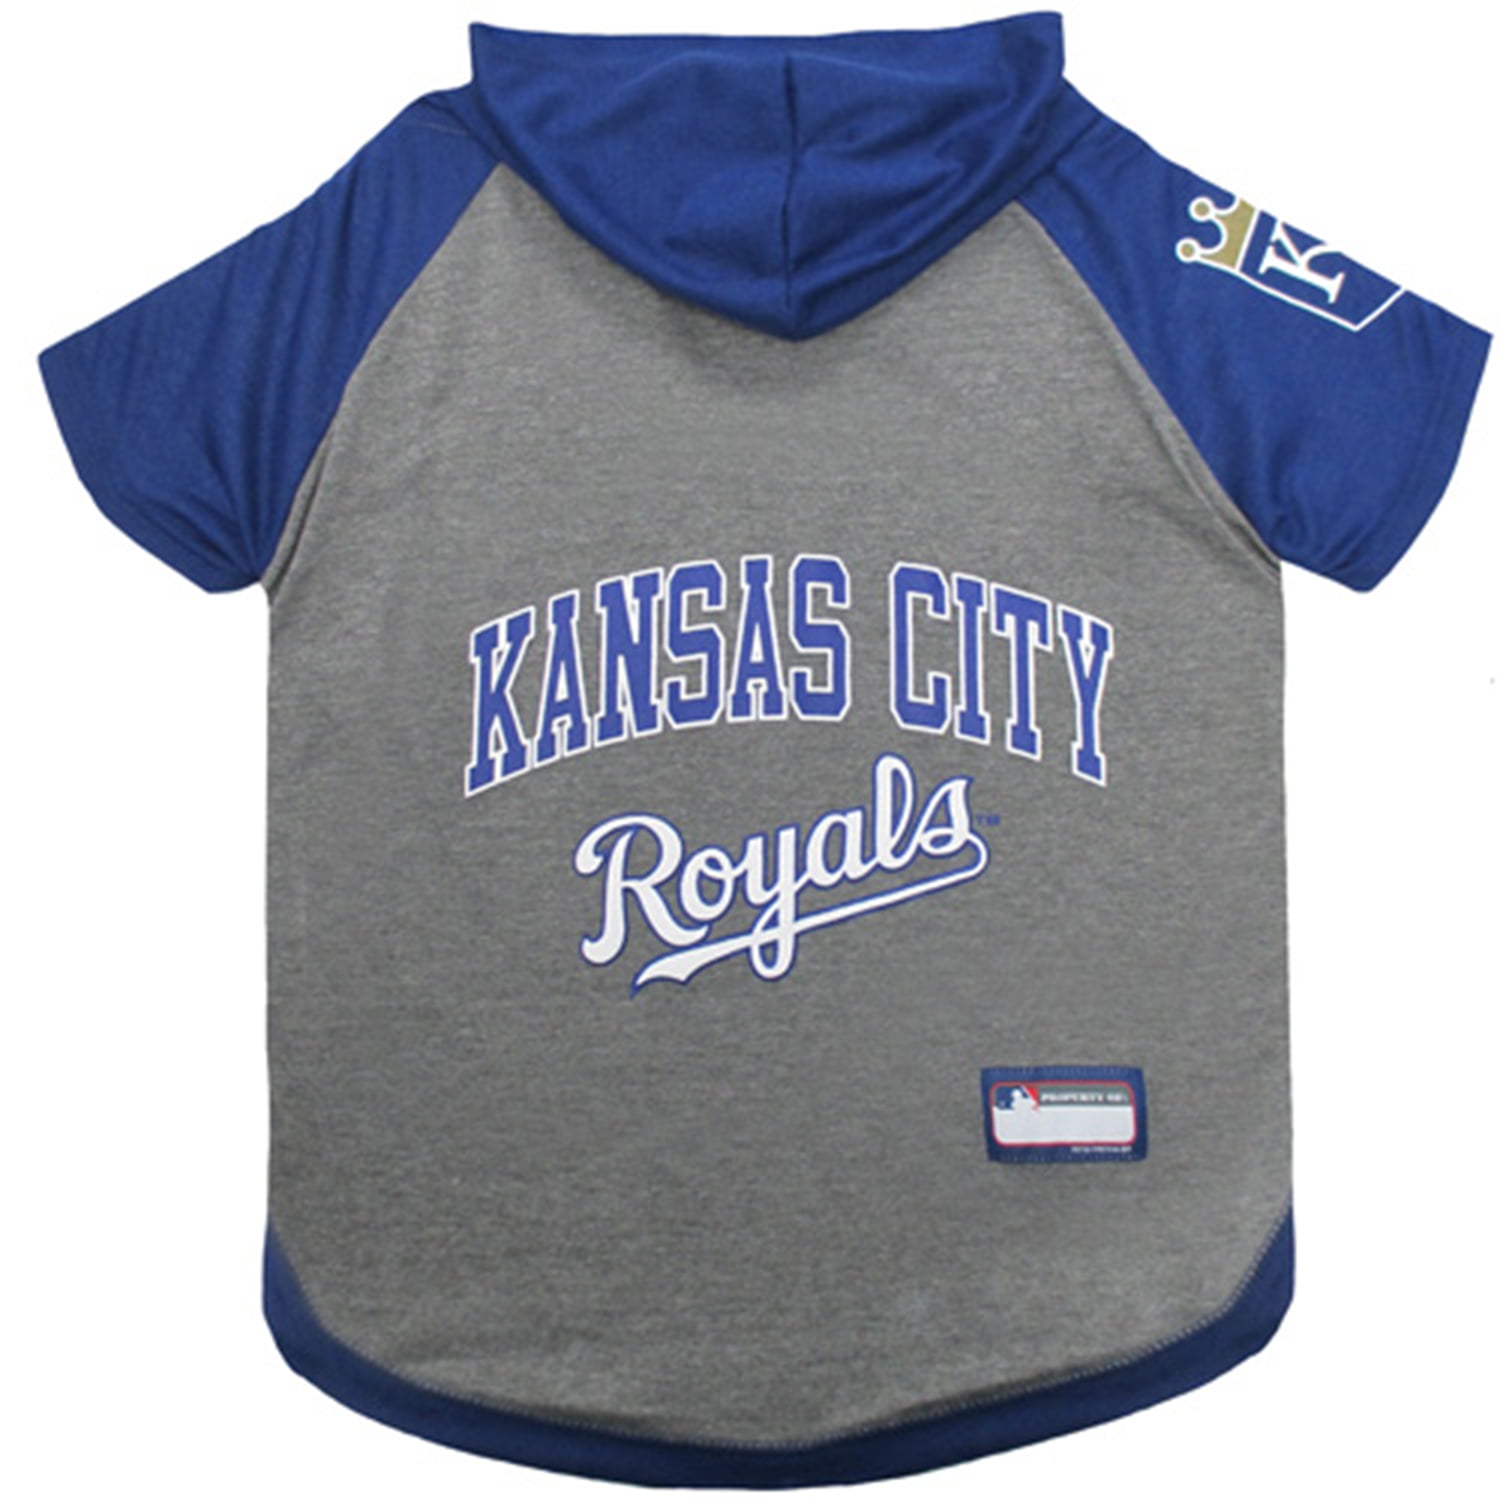 Kansas City Royals Dog Jersey - Medium